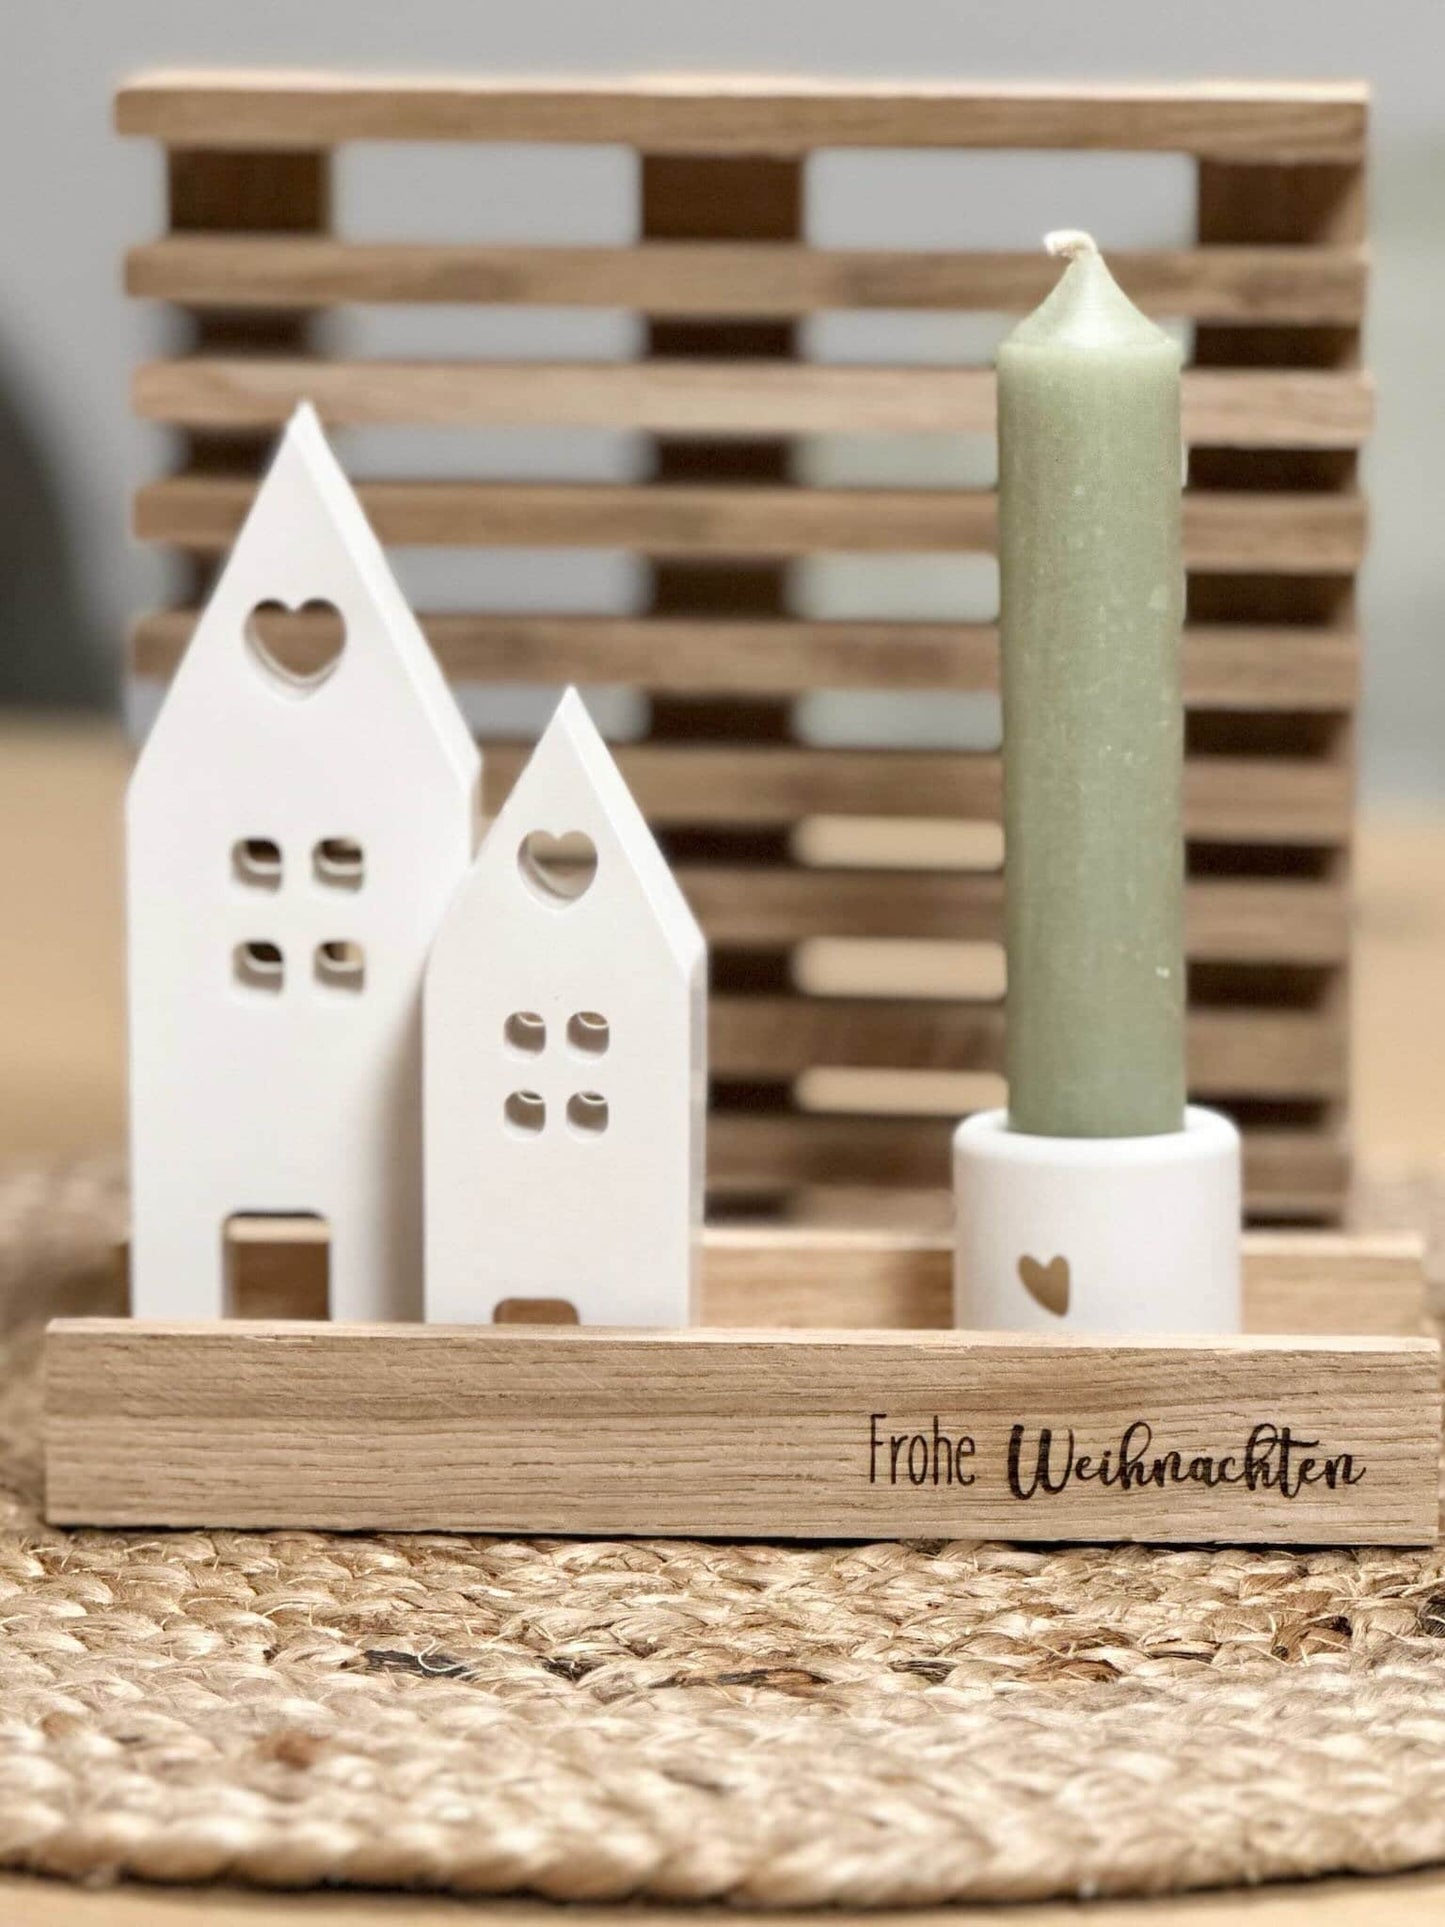 Frohe Weihnachten im Kerzenschein: Geschenkset mit Häuser Kerzenhalter und Kerze.Keraflott,Mitbringsel,Kleinigkeit